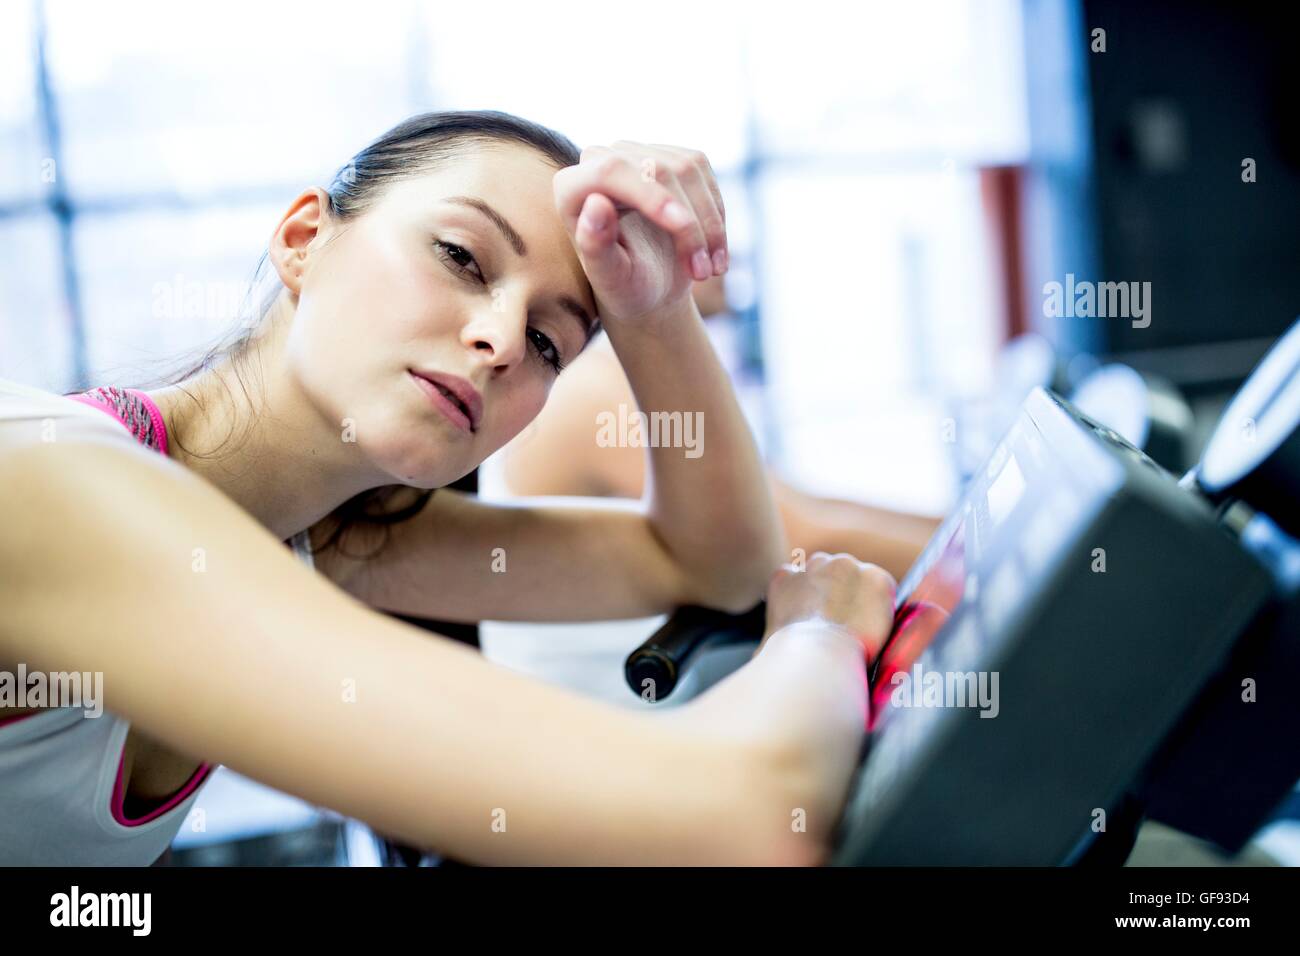 EIGENTUM FREIGEGEBEN. -MODELL VERÖFFENTLICHT. Close-up jungen Frau ruht auf Heimtrainer im Fitness-Studio, Porträt. Stockfoto